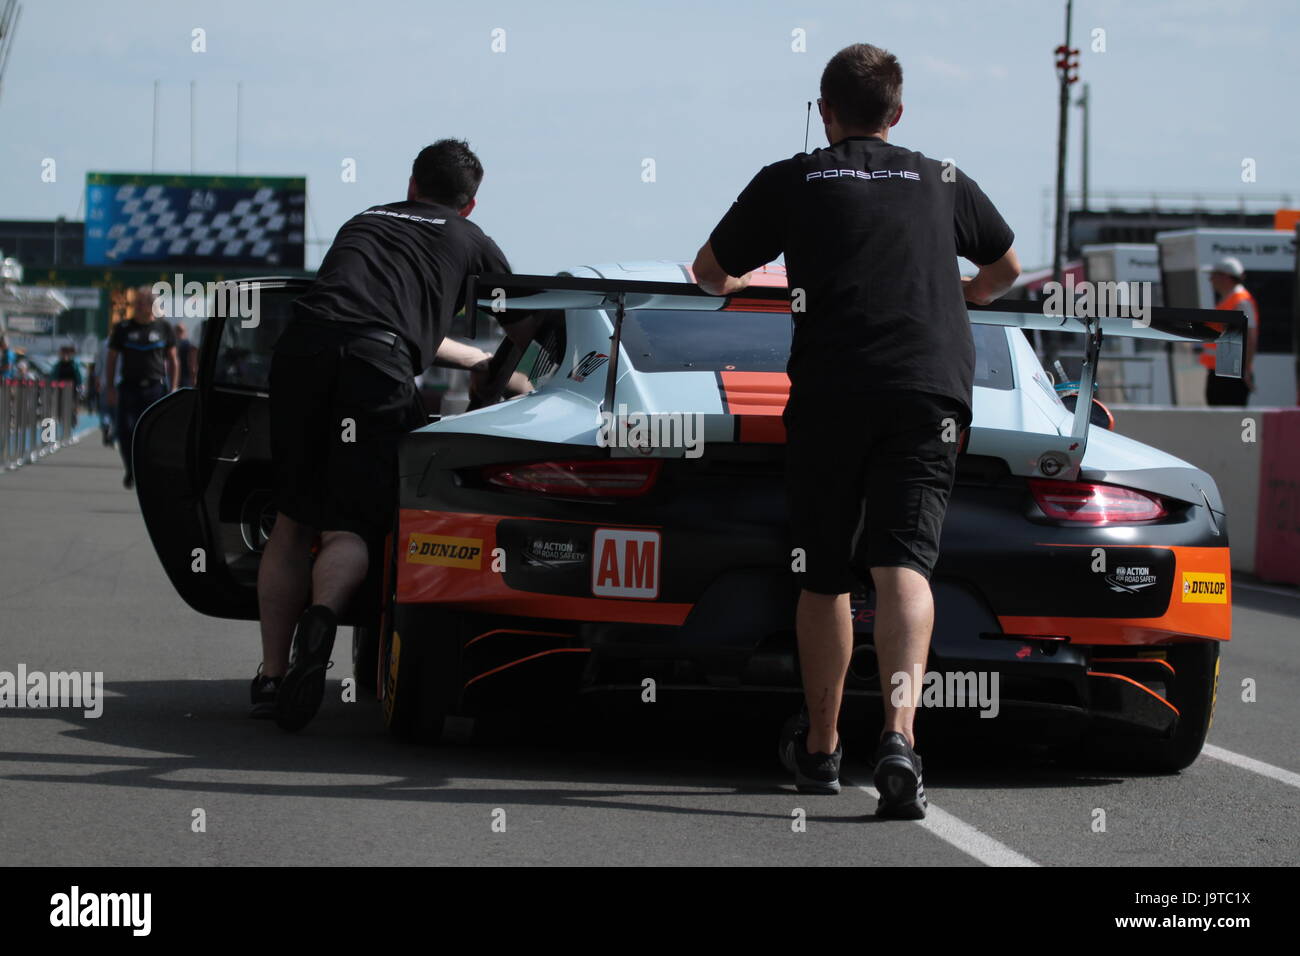 Le Mans, France. 2 juin, 2017. British Gulf Racing team voiture Porsche 911 RSR n°86 à pitline de circuit de la Sarthe en France pendant 24 Heures du Mans 2017 jours d'essai. Dimitry Lyubichev/Alamy Live News Banque D'Images